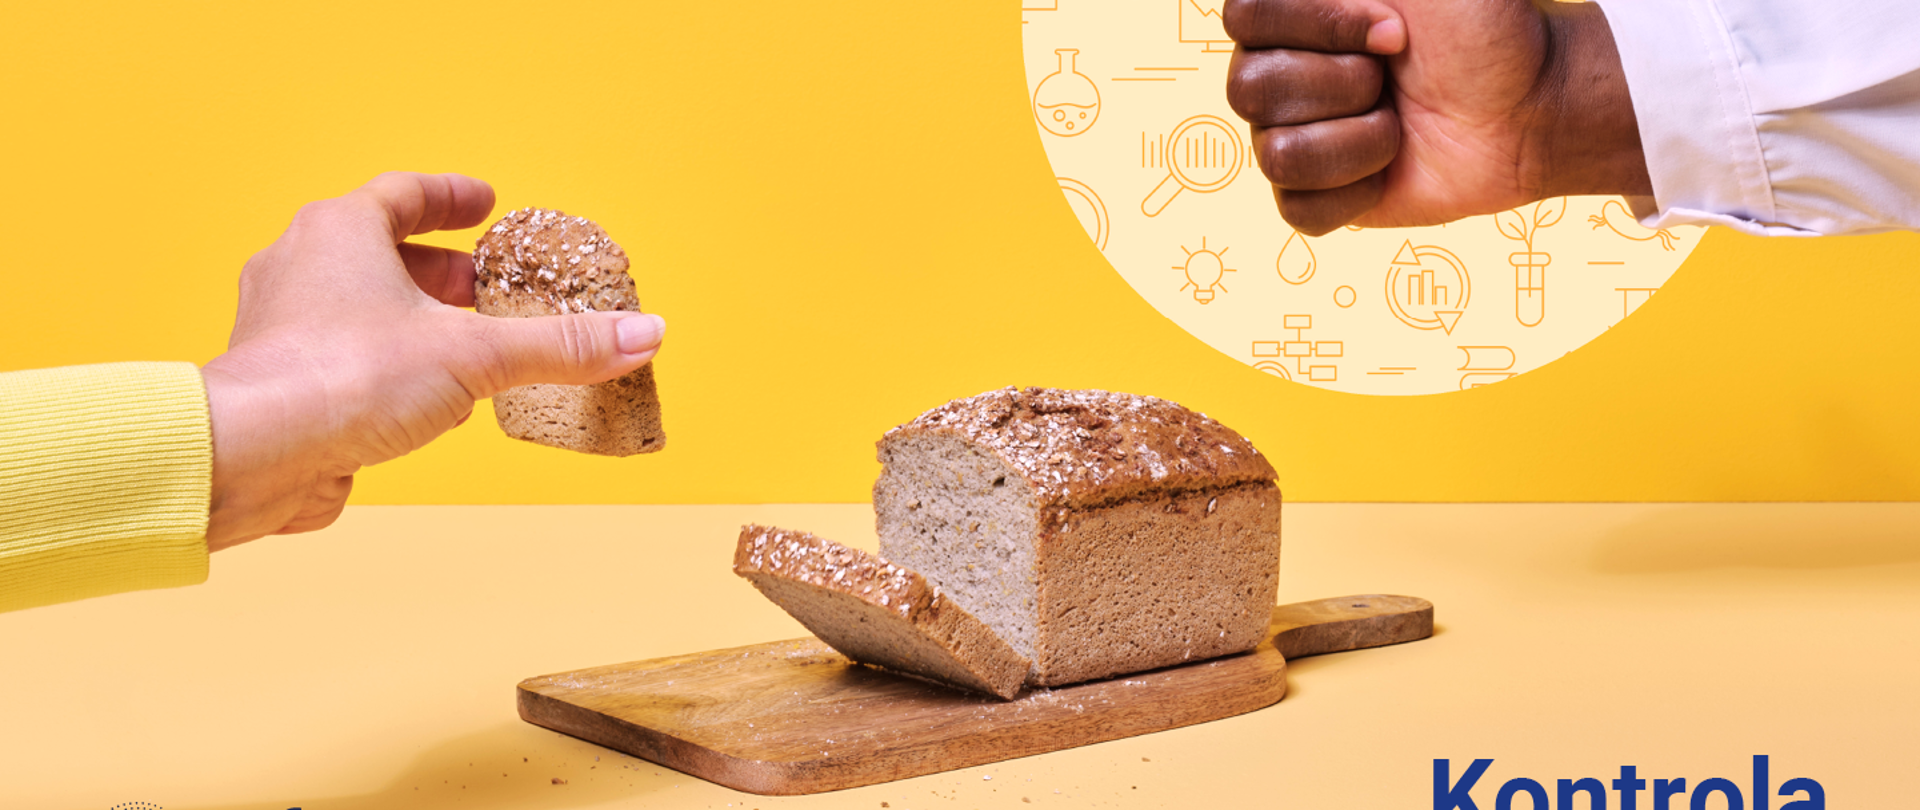 zdjęcie przedstawia bochenek chleba bezglutenowego. Po lewej stronie pokazana jest dłoń trzymająca kromkę chleba, dłoń po prawej ma uniesiony kciuk w górę